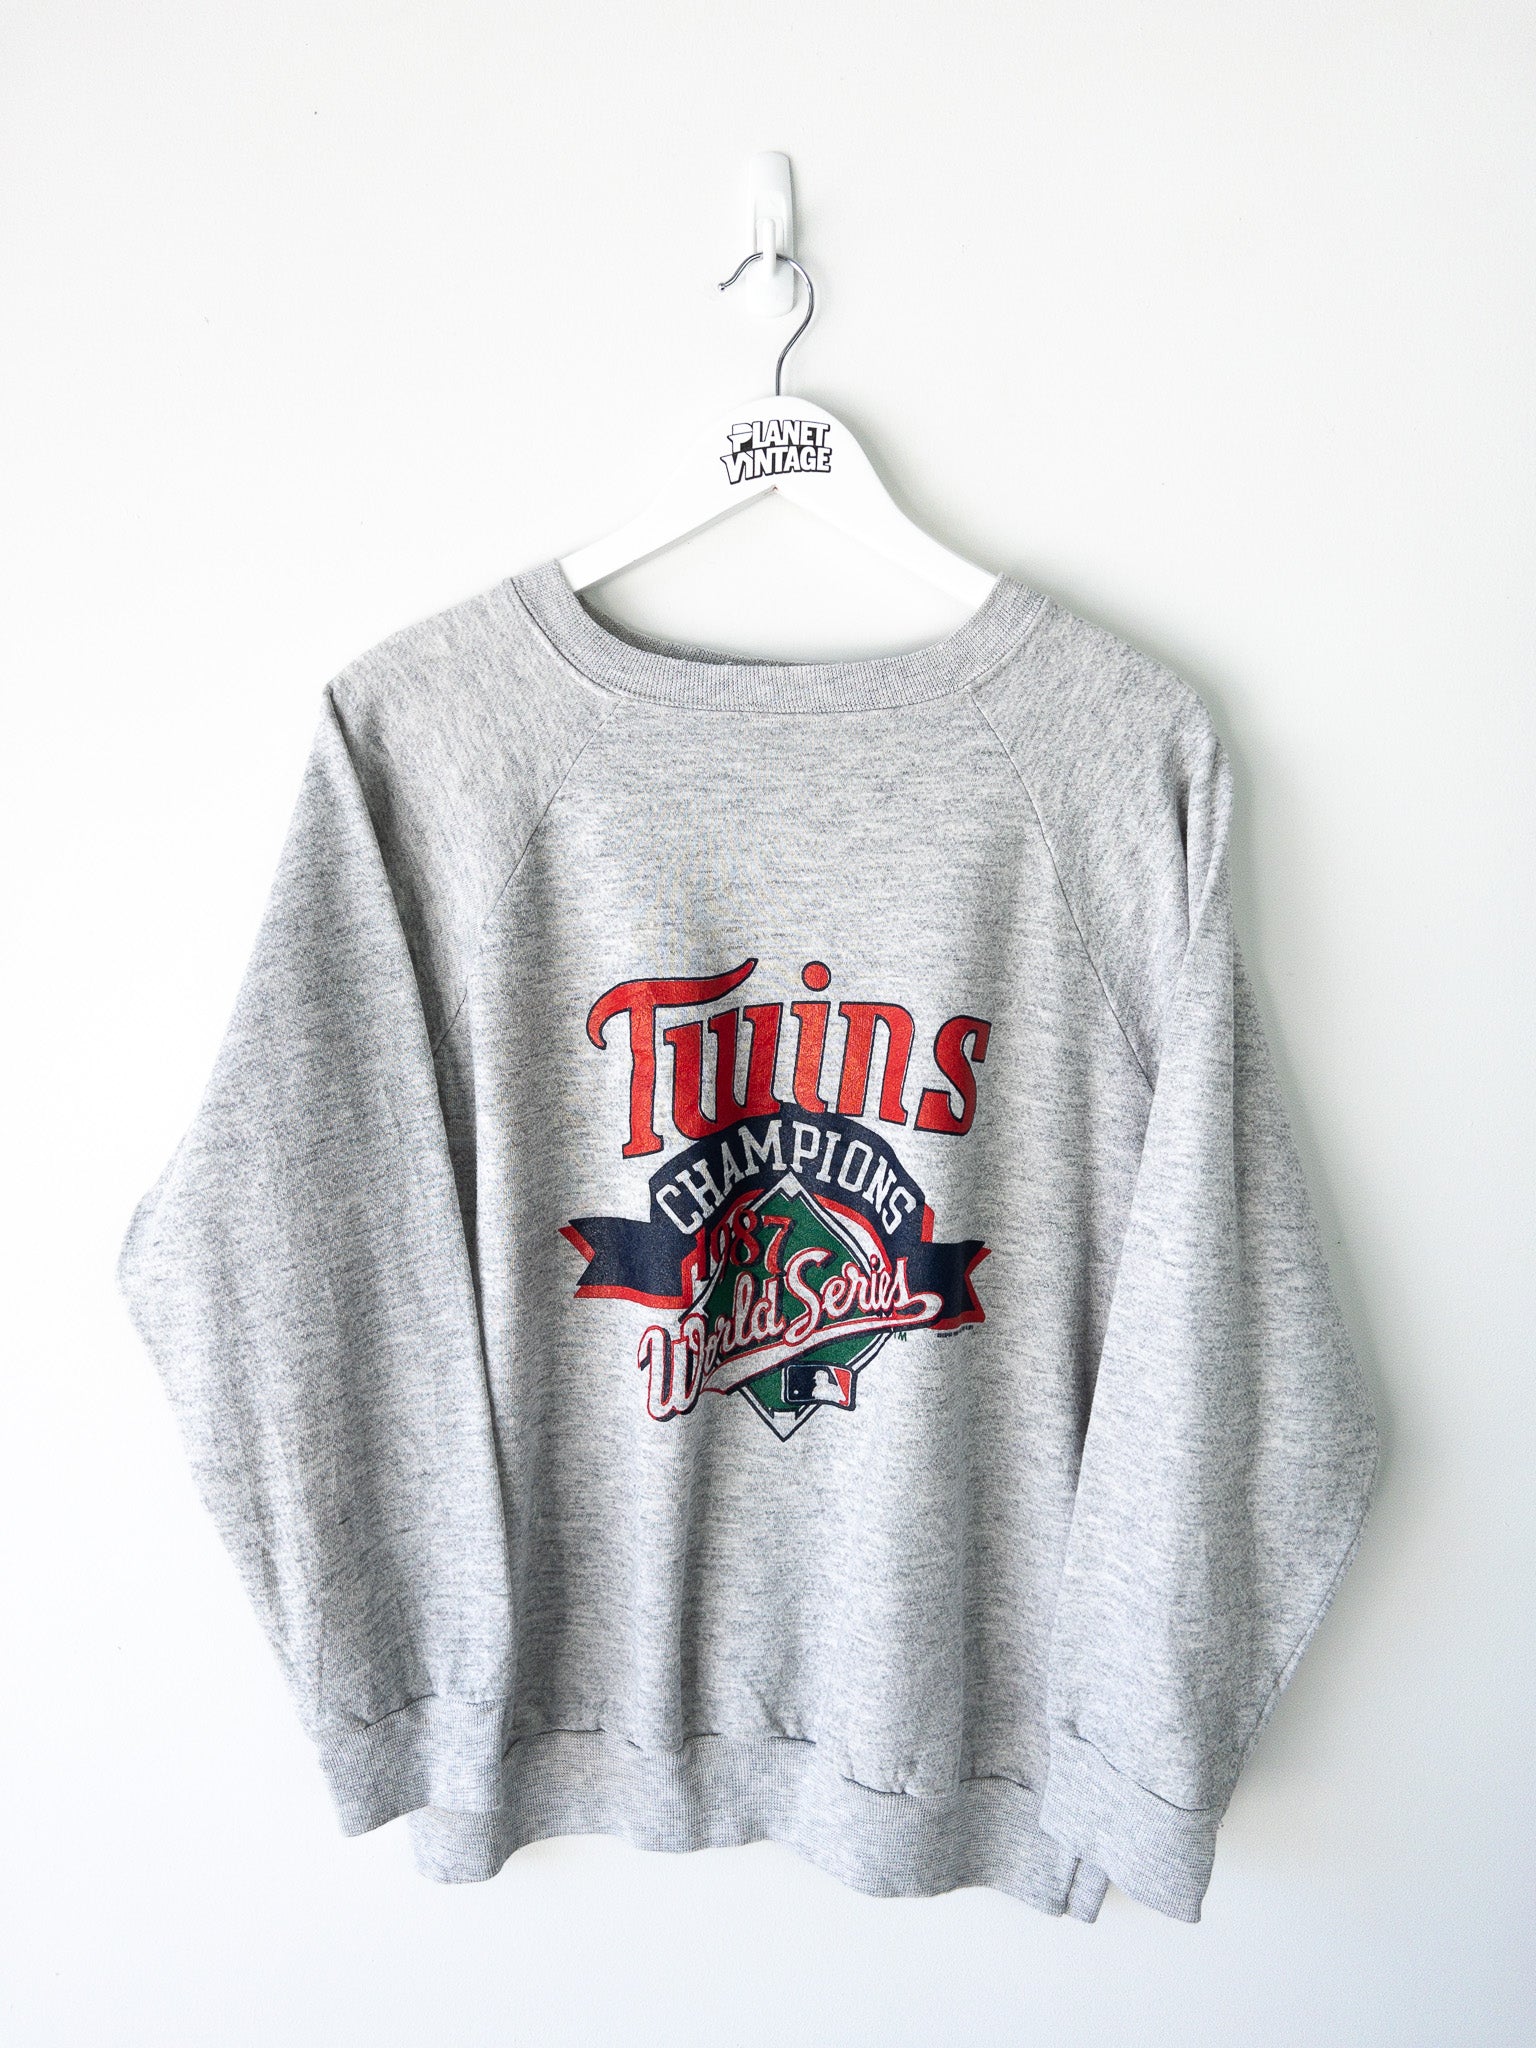 Vintage Minnesota Twins 1987 Sweatshirt (L)